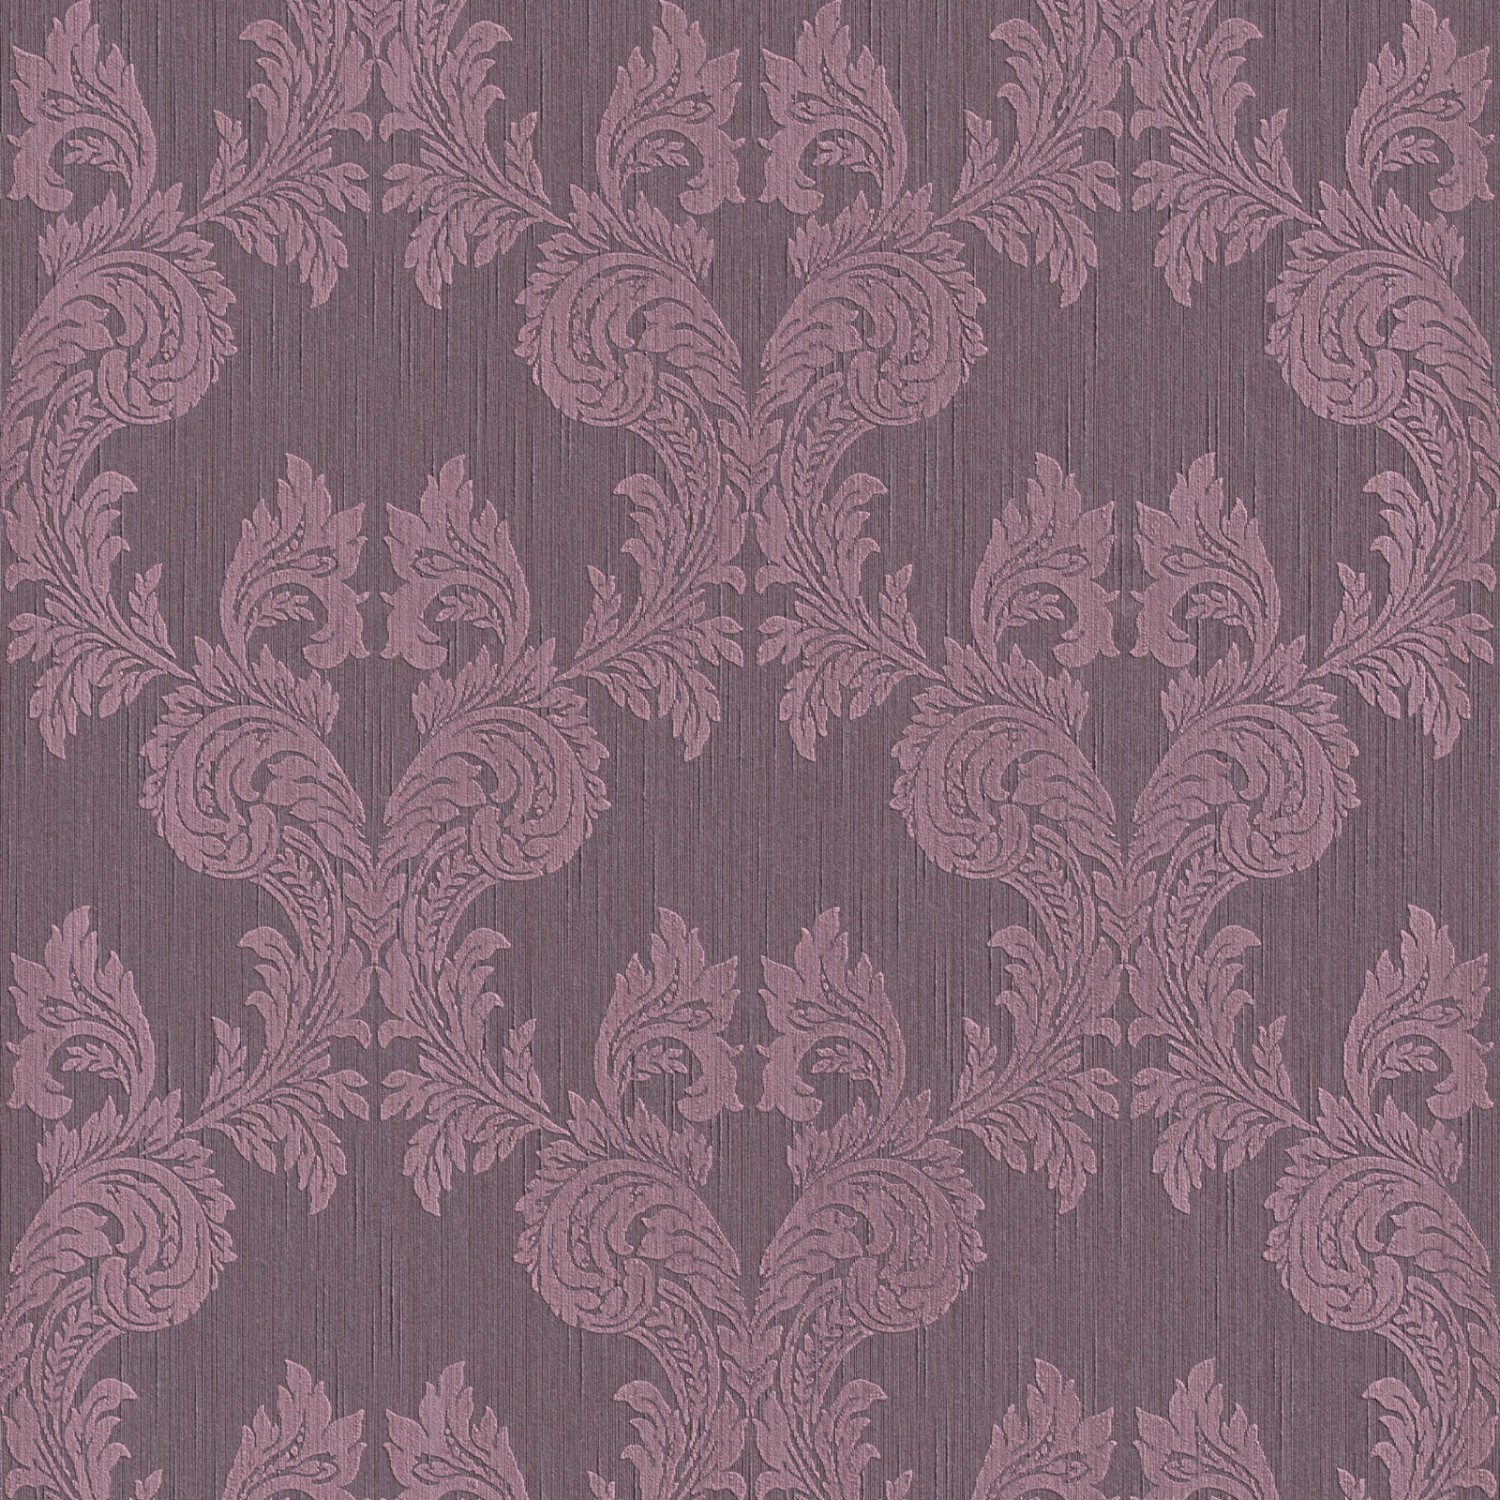 Bricoflor Lila Ornament Tapete Dunkle Vlies Textiltapete mit Barock Muster in Violett Elegante Textil Vliestapete mit Rokoko Design für Wohnzimmer von Bricoflor